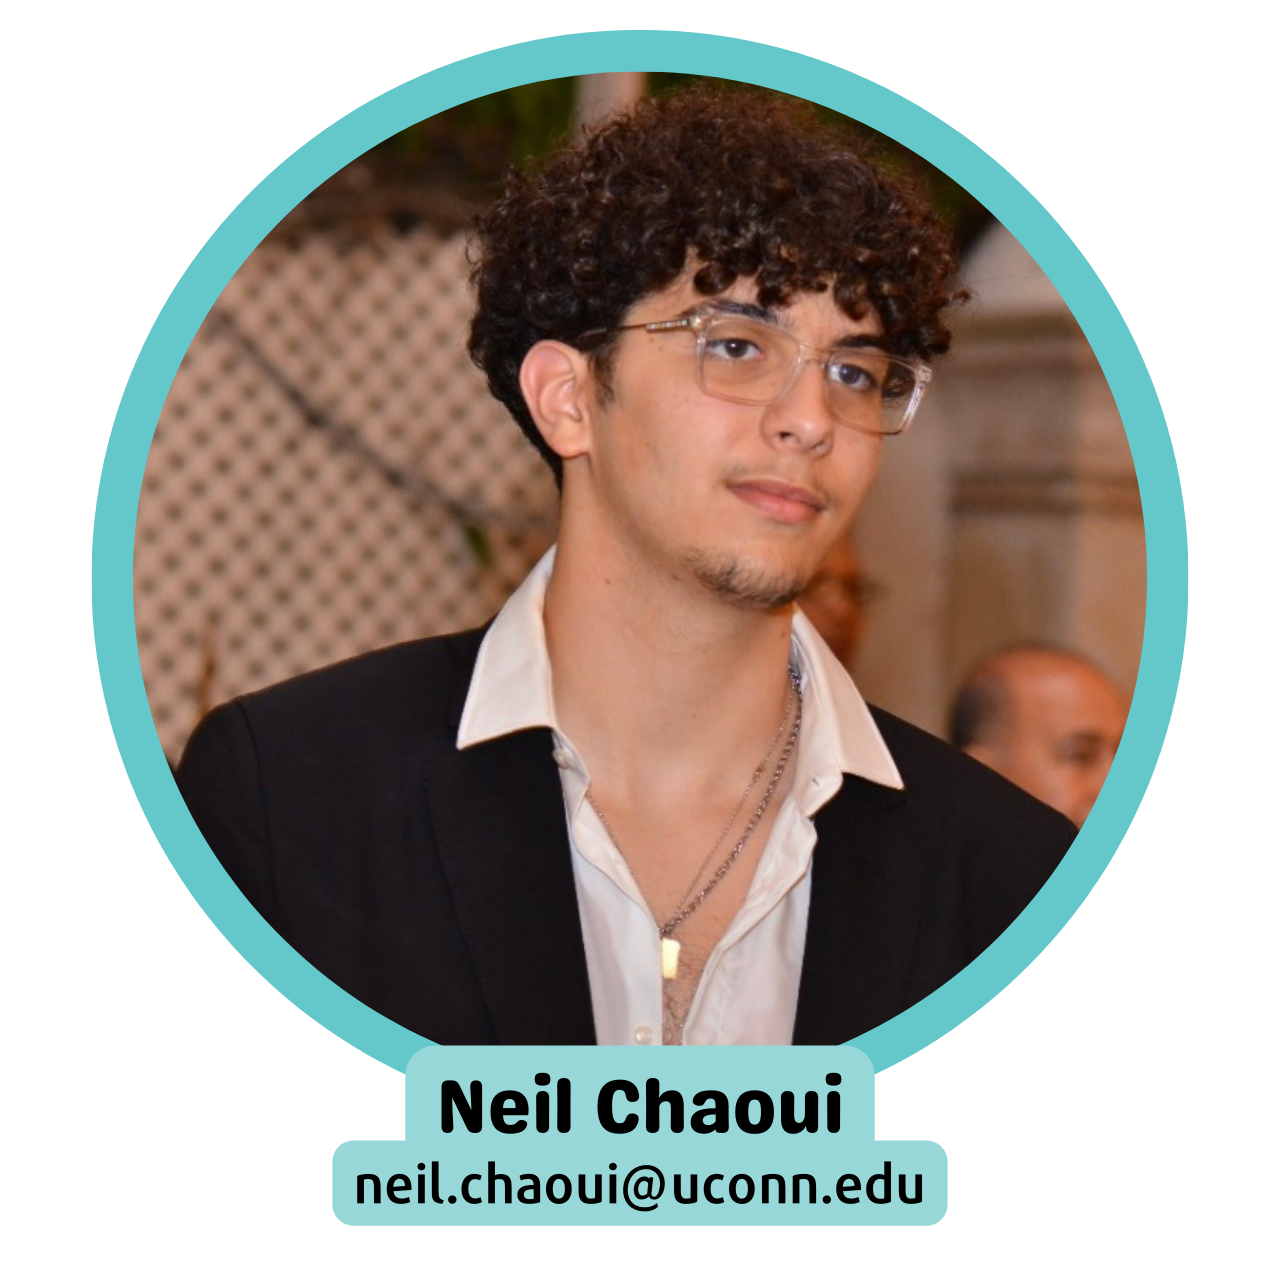 Neil Chaoui